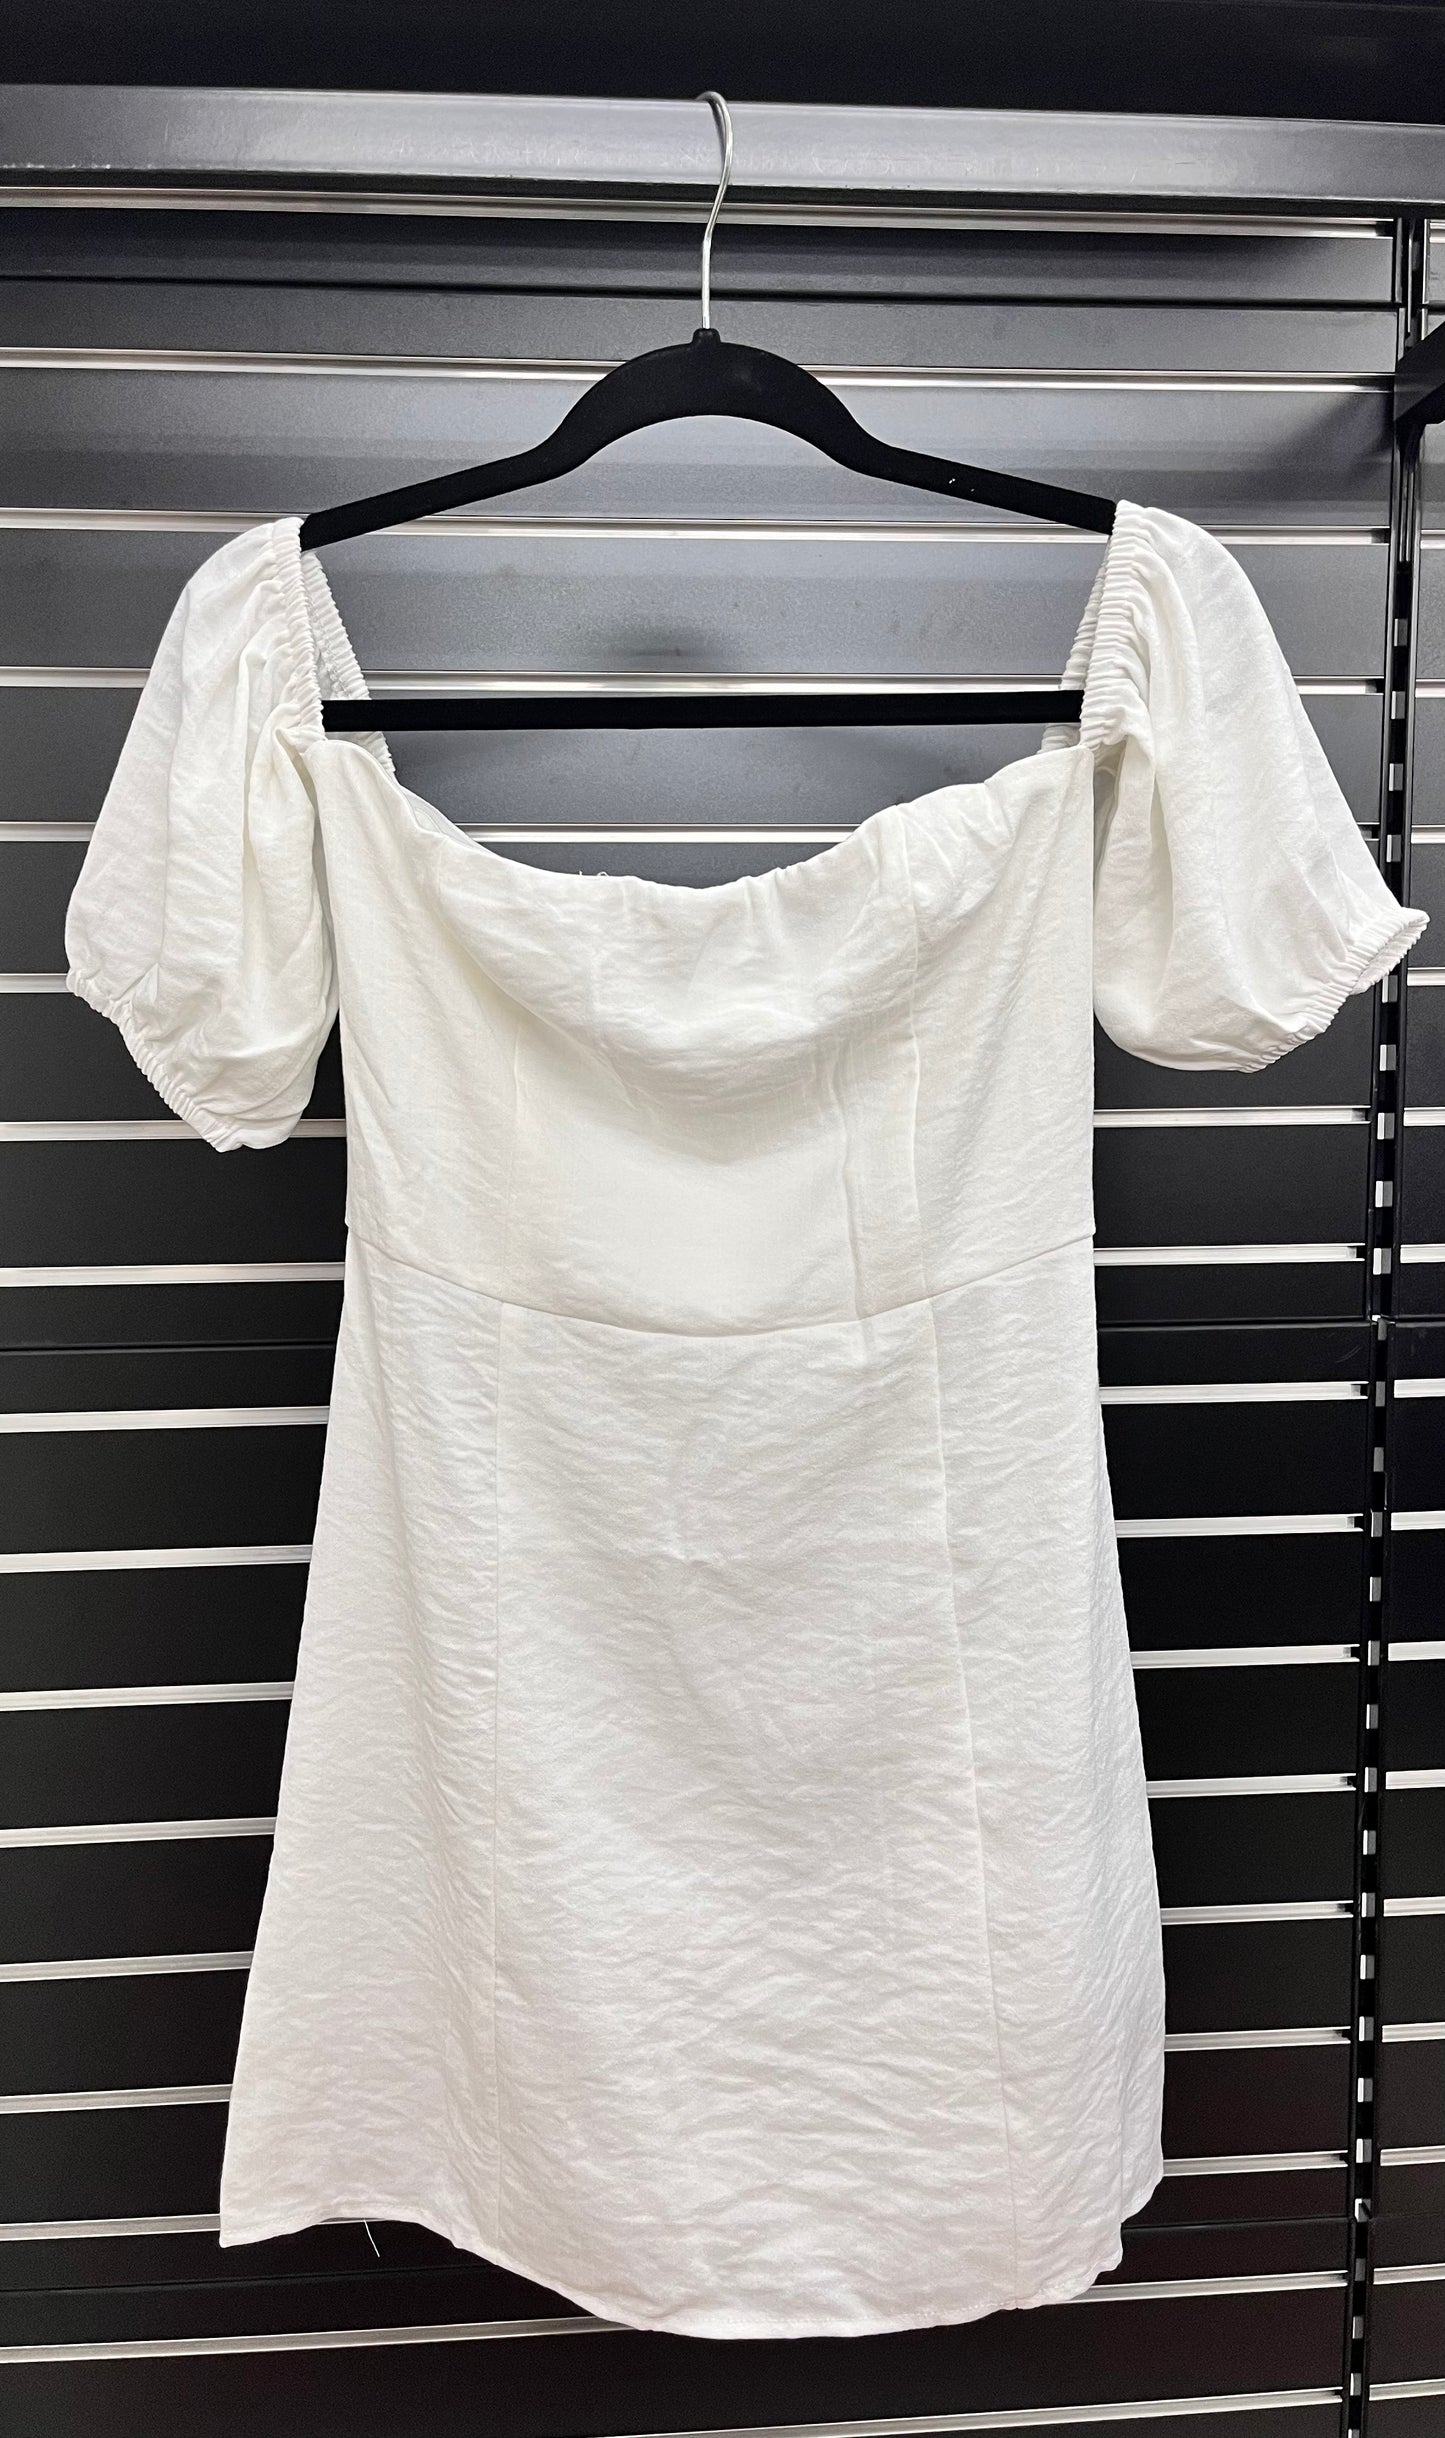 VY0381MD Off Shoulder Mini Dress (Pack) On Sale $6